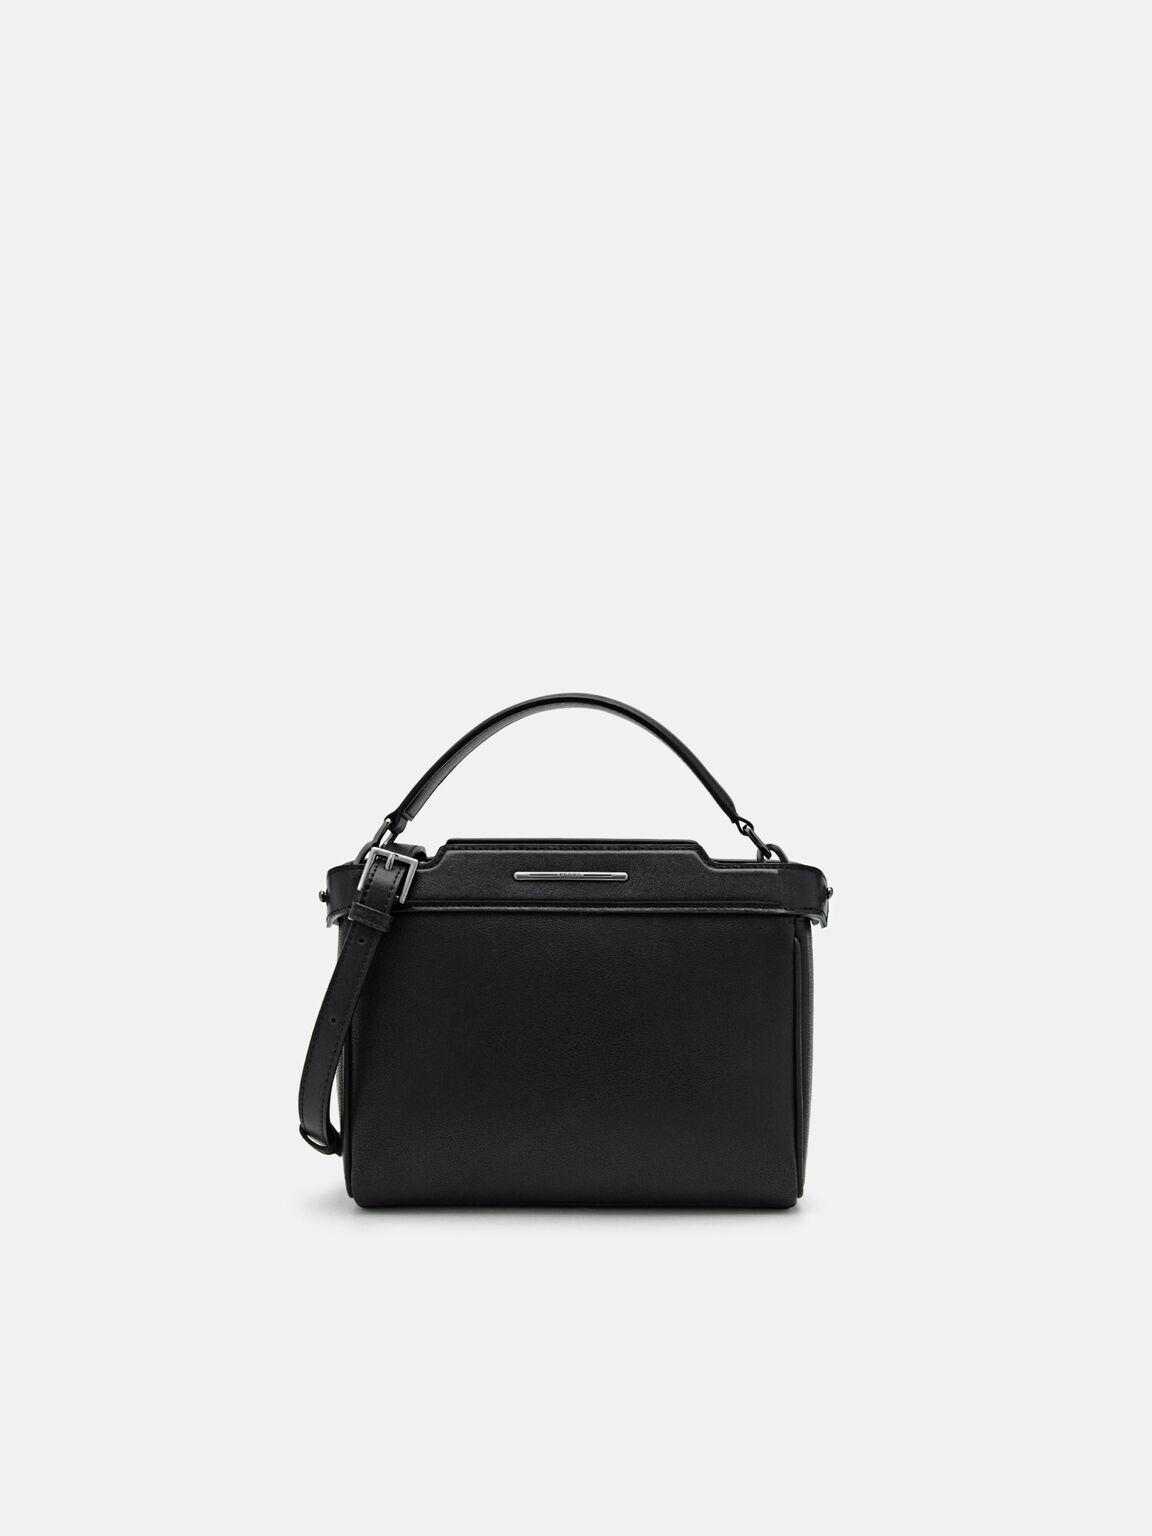 Leather Structured Sling Bag, Black